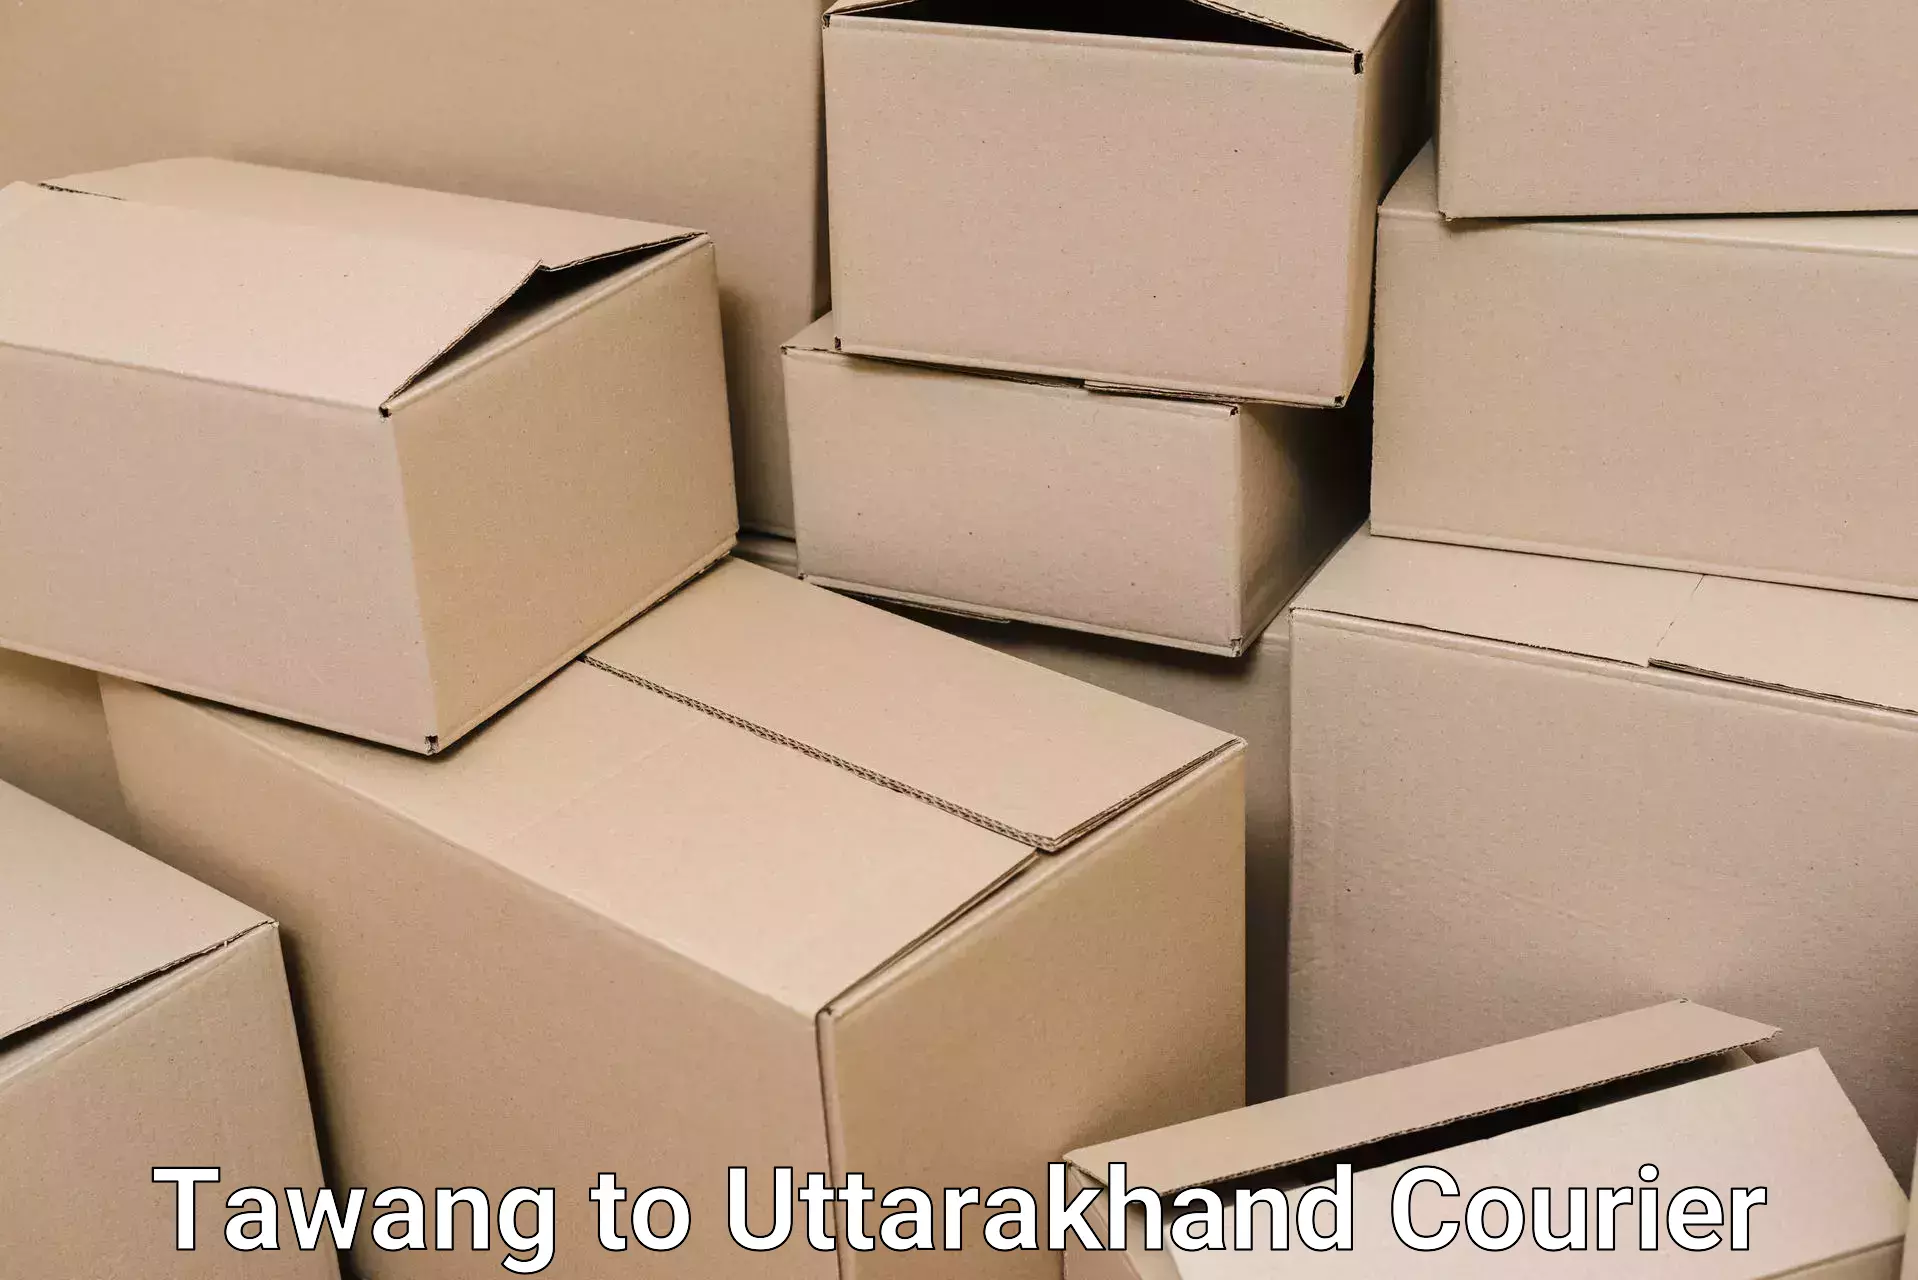 Efficient packing services Tawang to Nainital